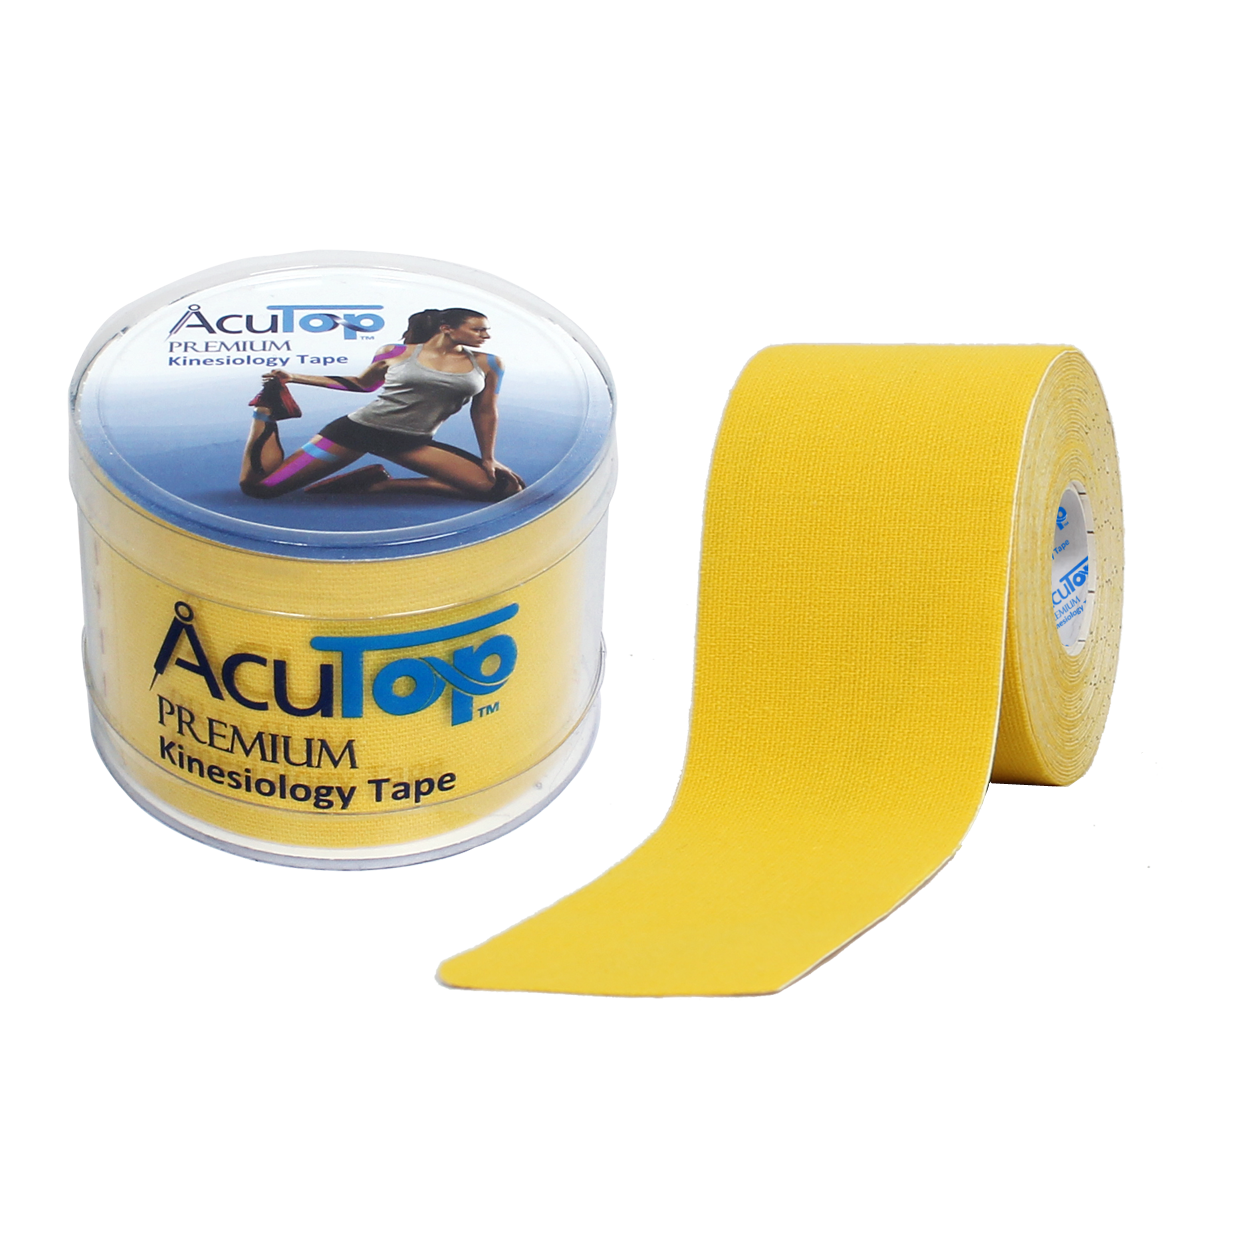 Acutop - Premium Kinesiologie Tape - Geel - 5cm x 5m - Intertaping.nl